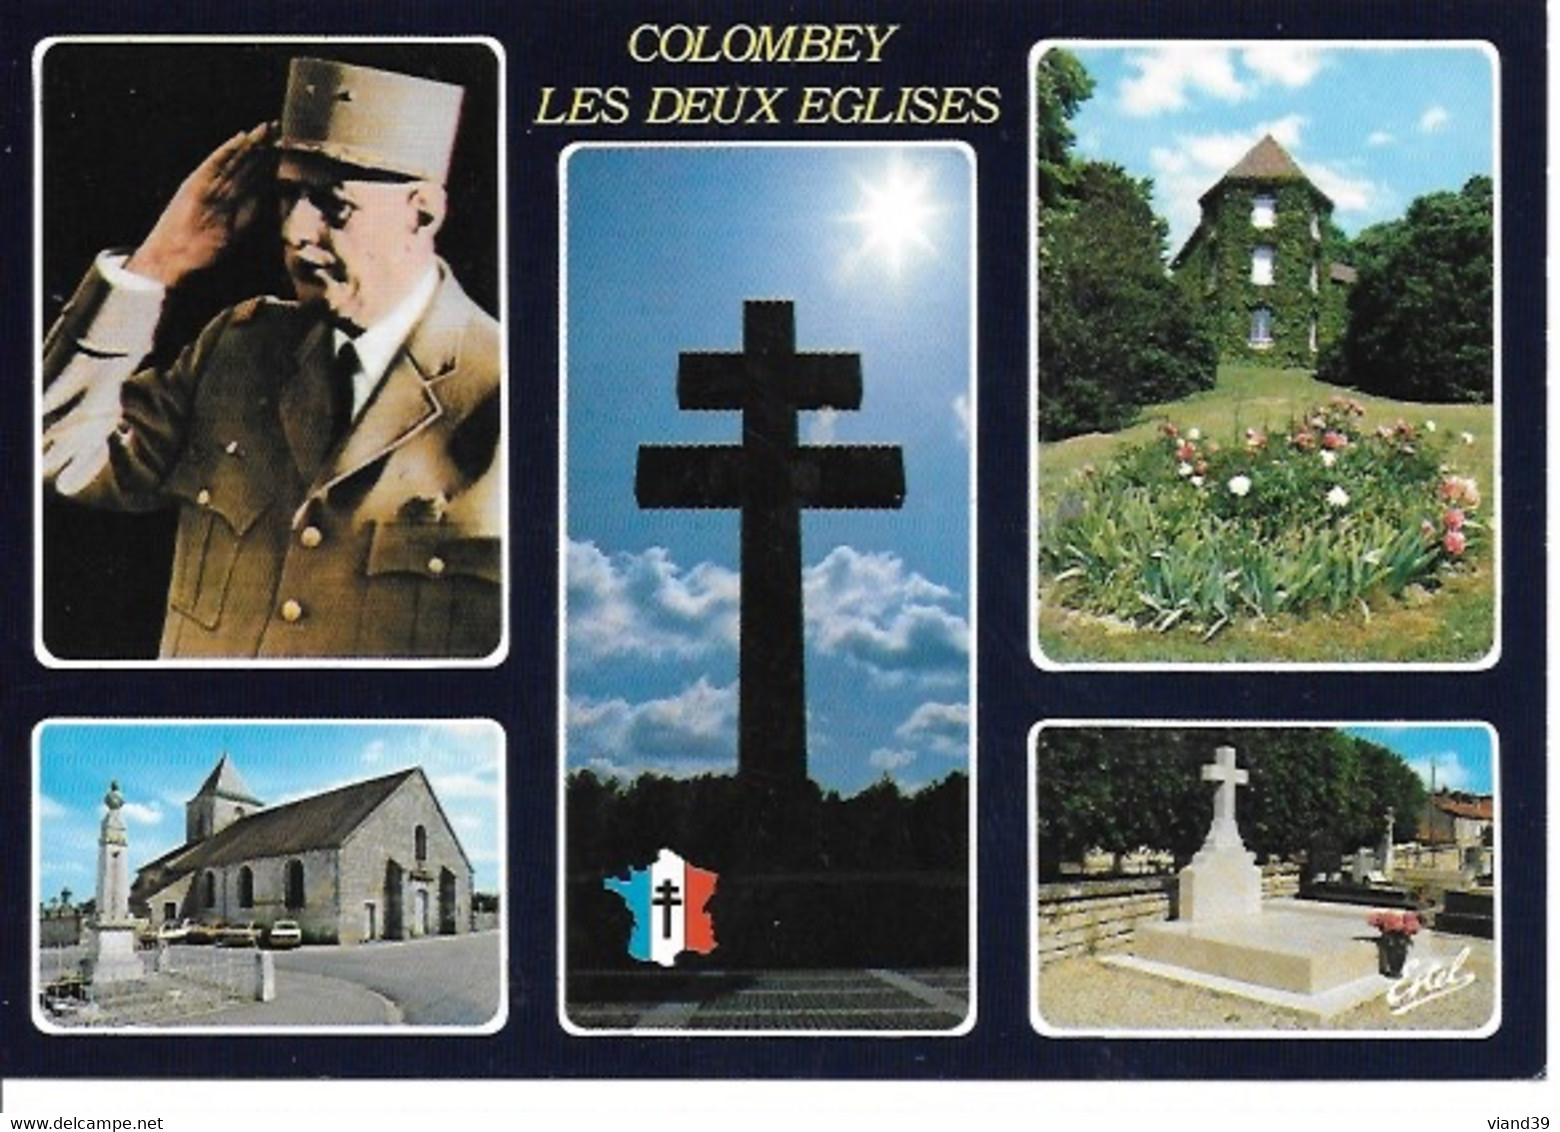 Colombey Les Deux Eglises - Le Général De Gaulle : Mémorial; La Boisserie; église, La Tombe - Non écrite - Colombey Les Deux Eglises